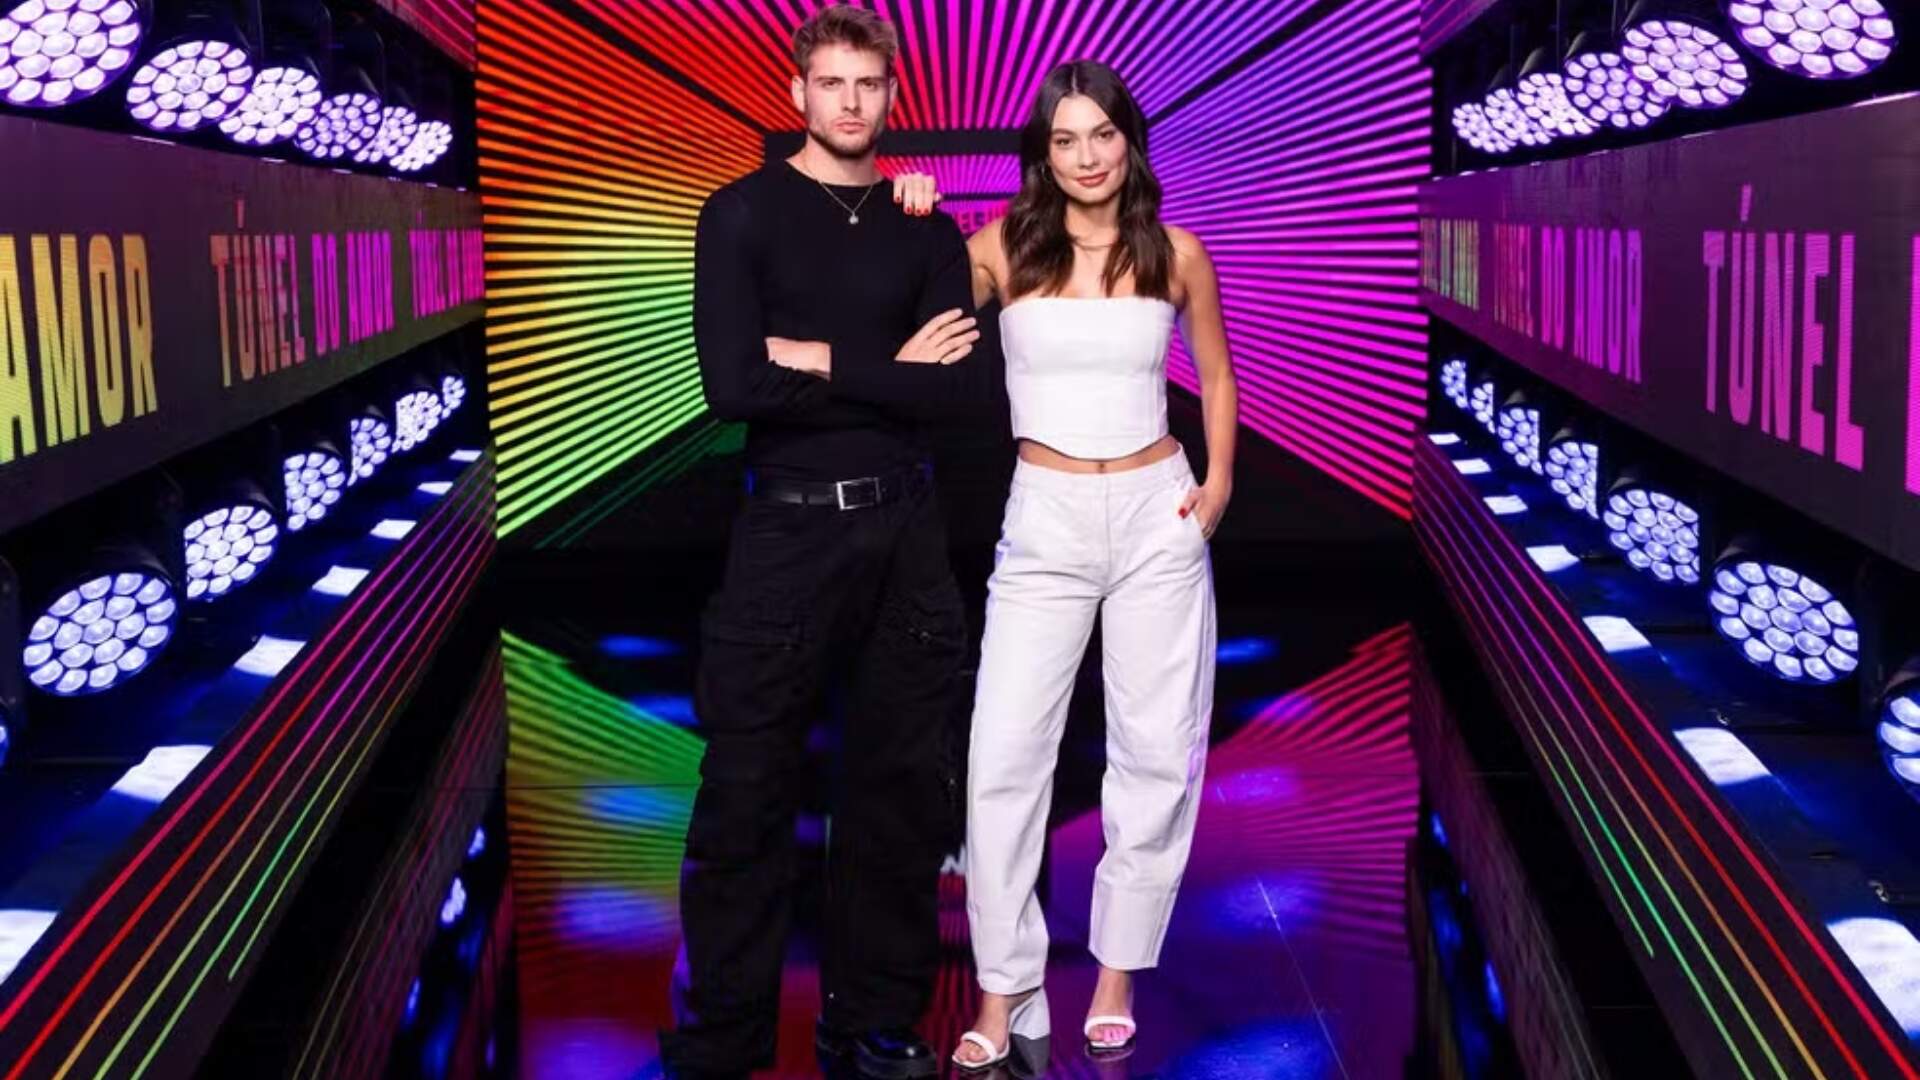 Túnel do Amor: Ex-BBB encara desafio em reality show de relacionamento e abre o jogo sobre experiência